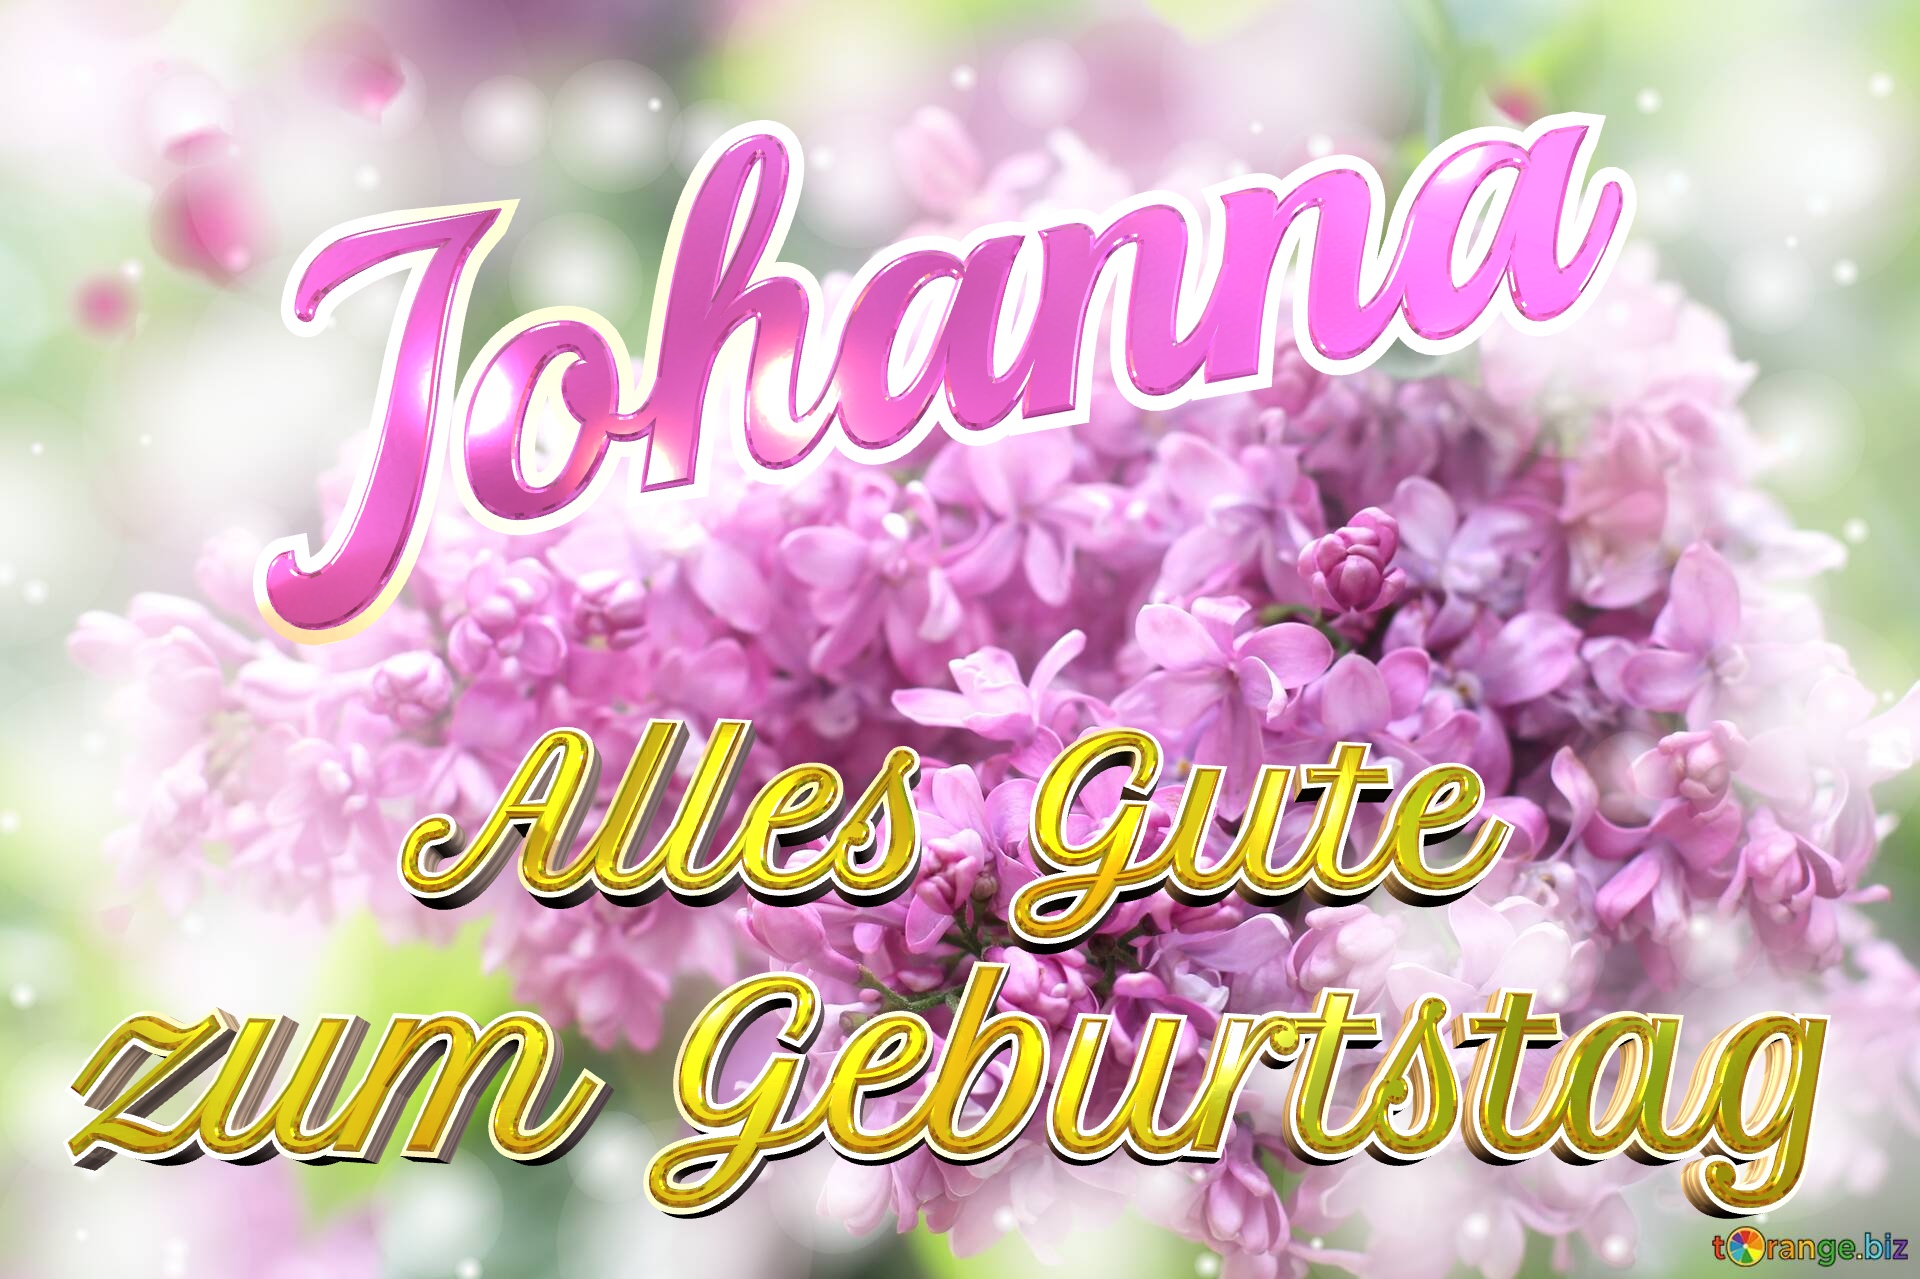     Alles Gute  zum Geburtstag Johanna  Lilac №0